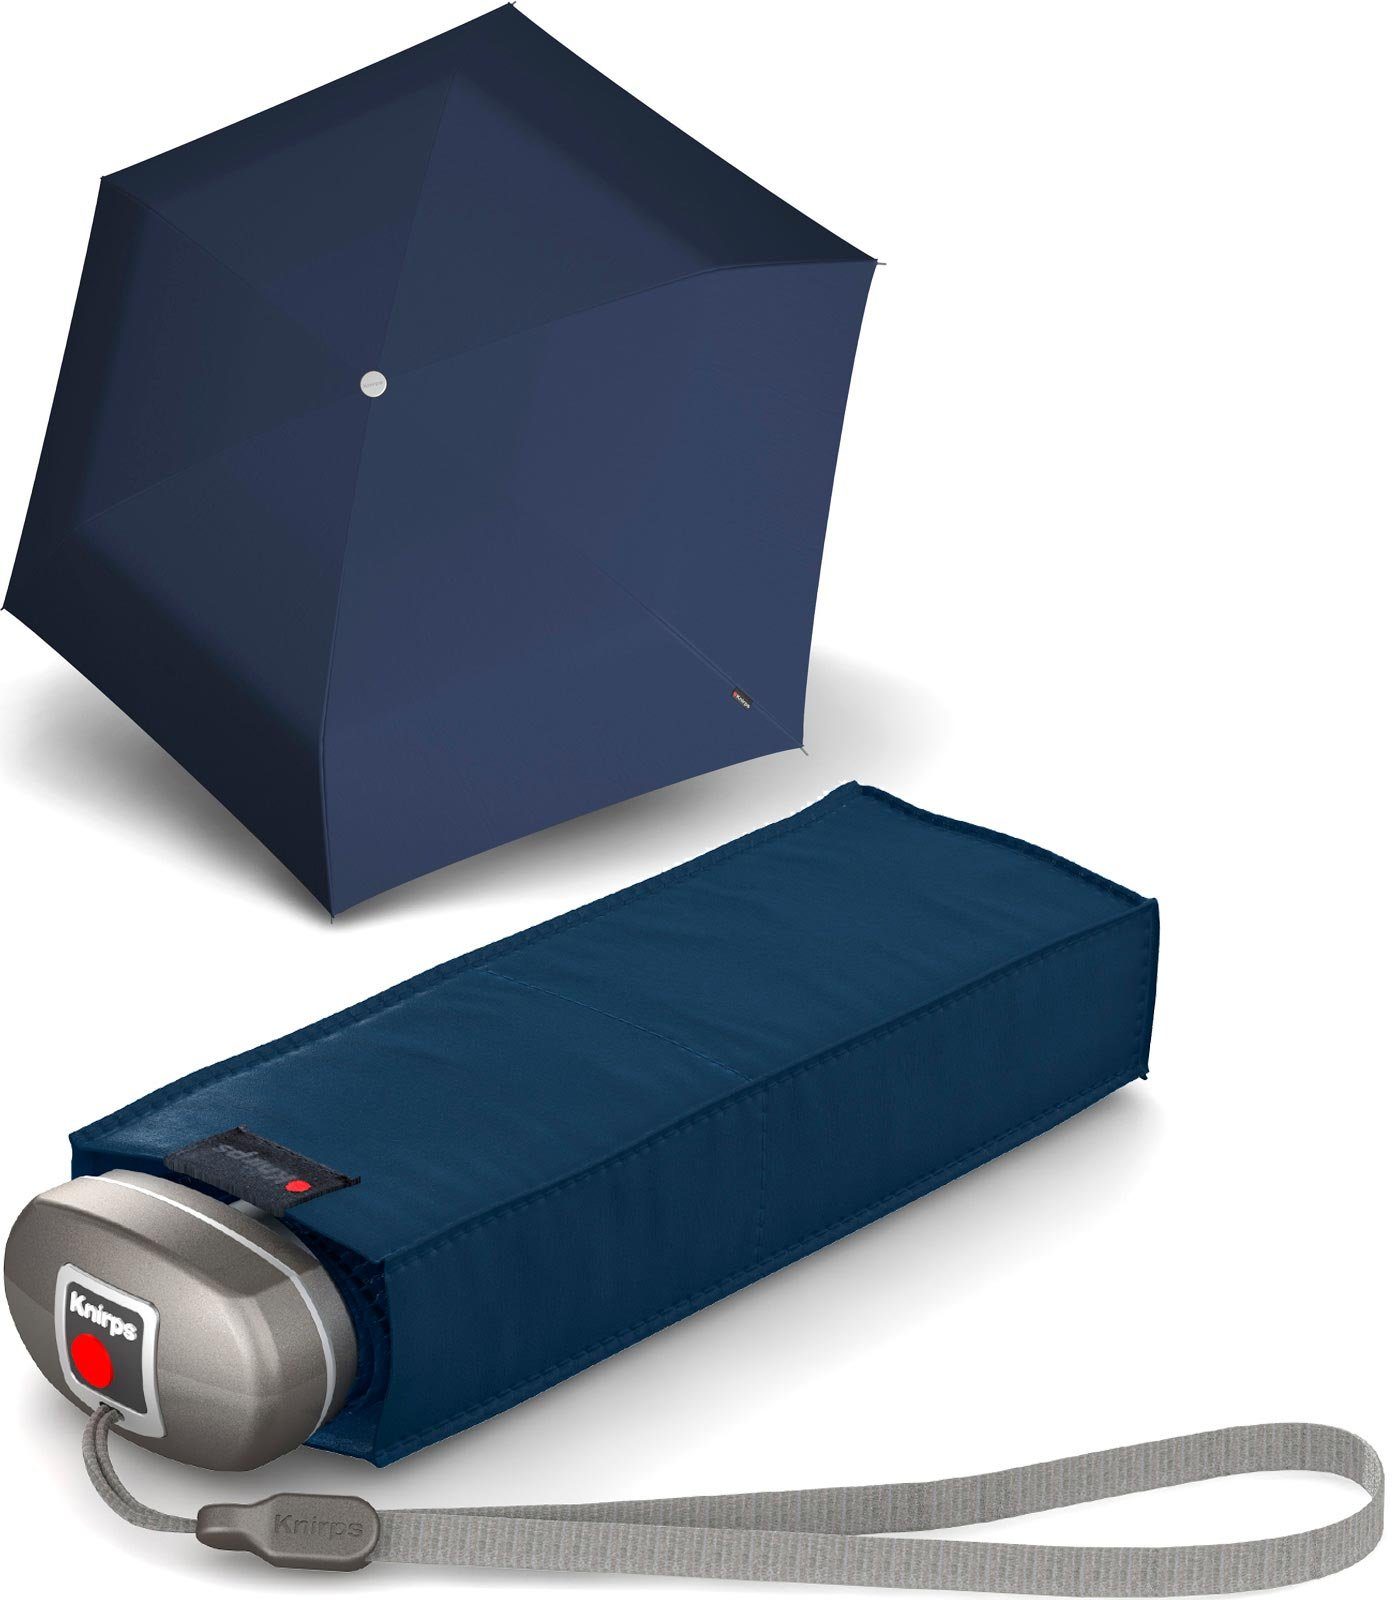 Knirps® Taschenregenschirm Mini-Schirm Travel klein leicht kompakt, der zuverlässige Begleiter, der in jede Tasche passt navy-blau